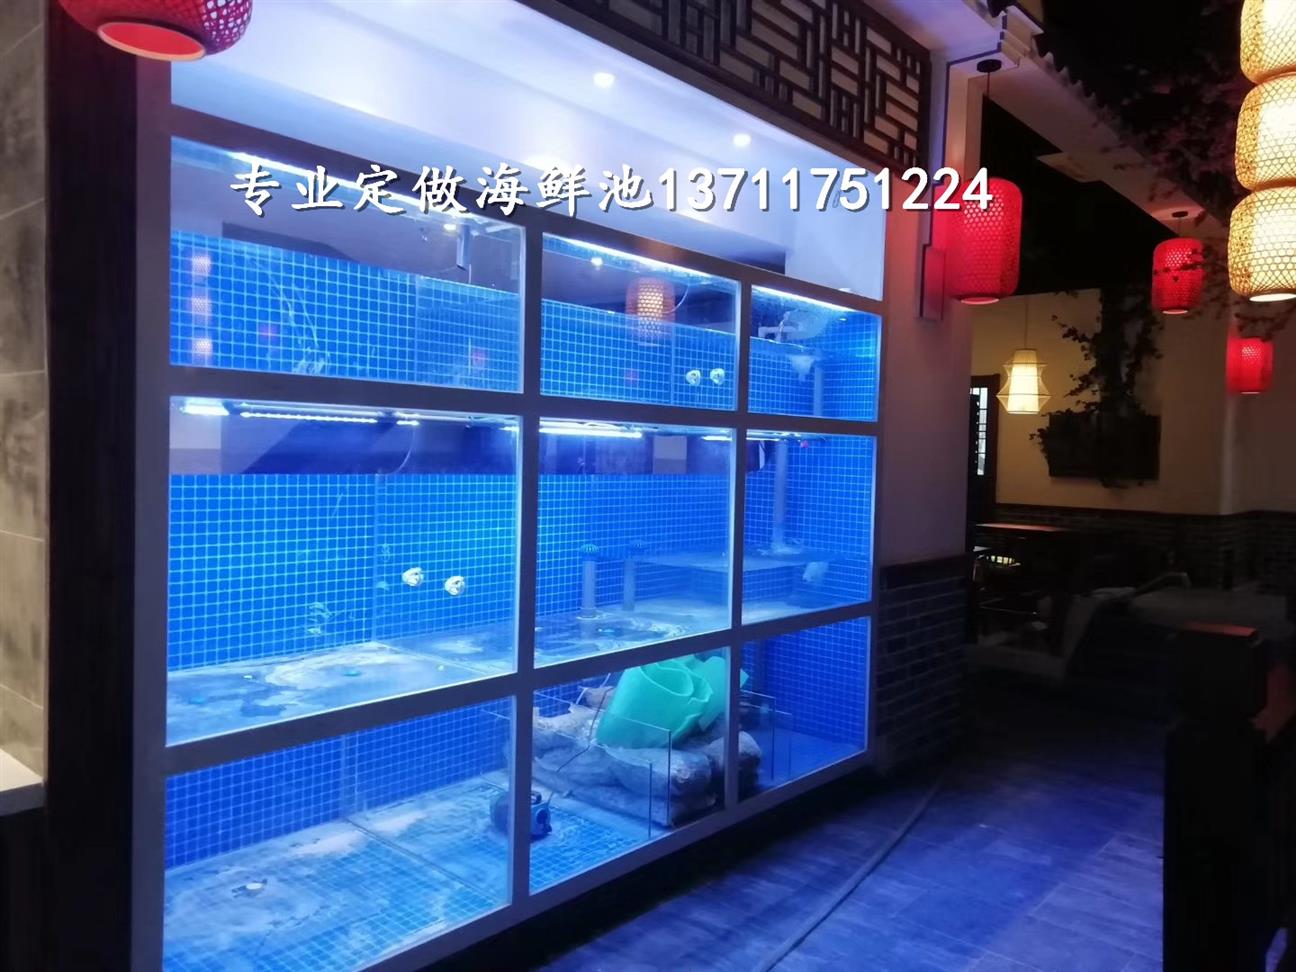 广州猎德玻璃海鲜池电话